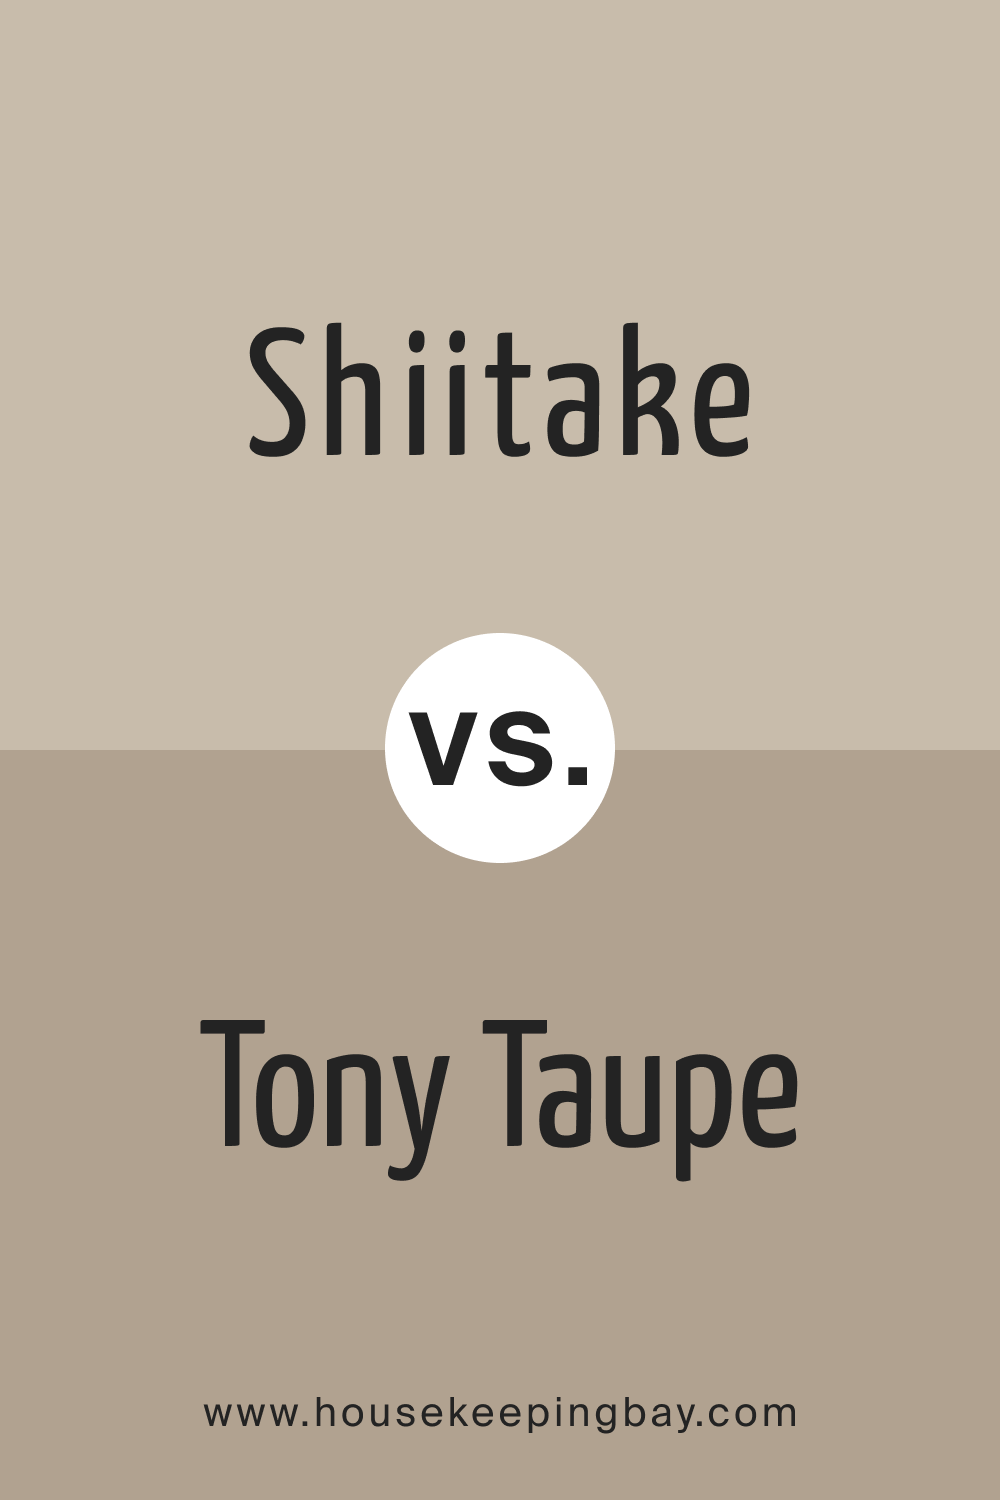 Shiitake vs. Tony Taupe